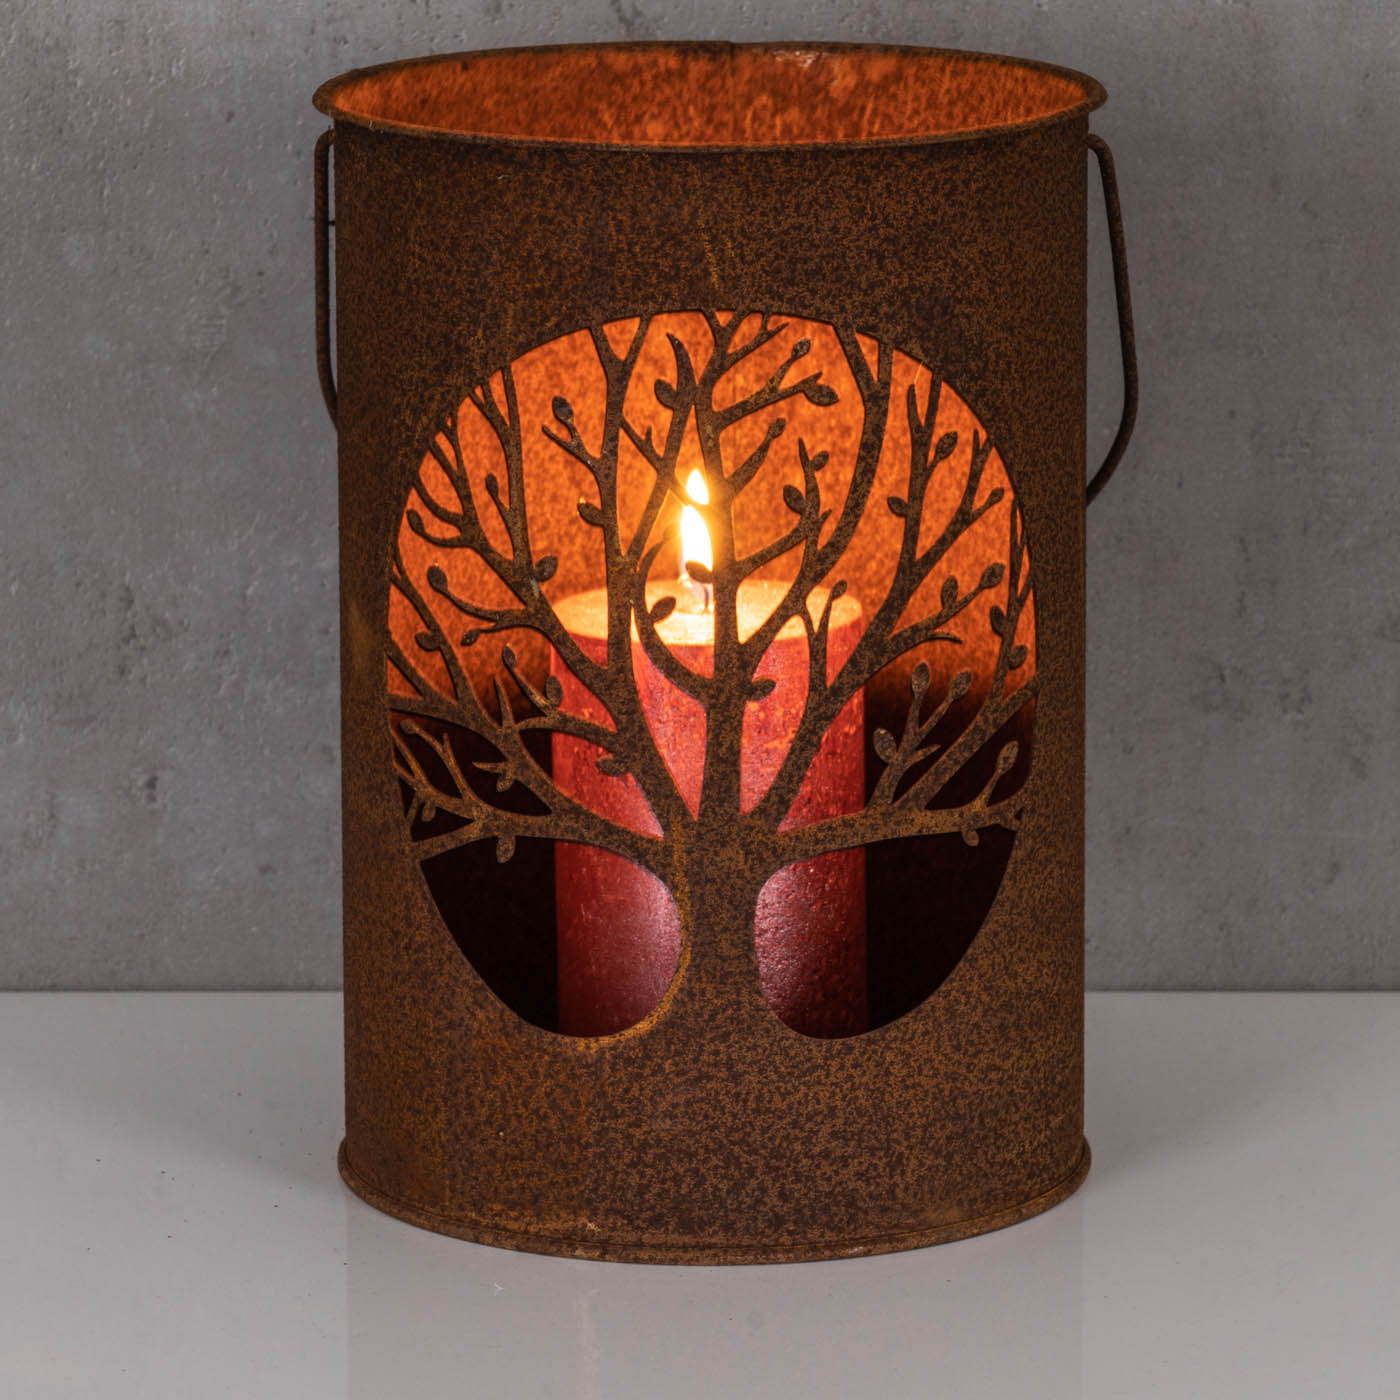 Windlicht H23cm Metall Braun Rost Lebensbaum Rostdeko Gartendeko Kerzenhalter